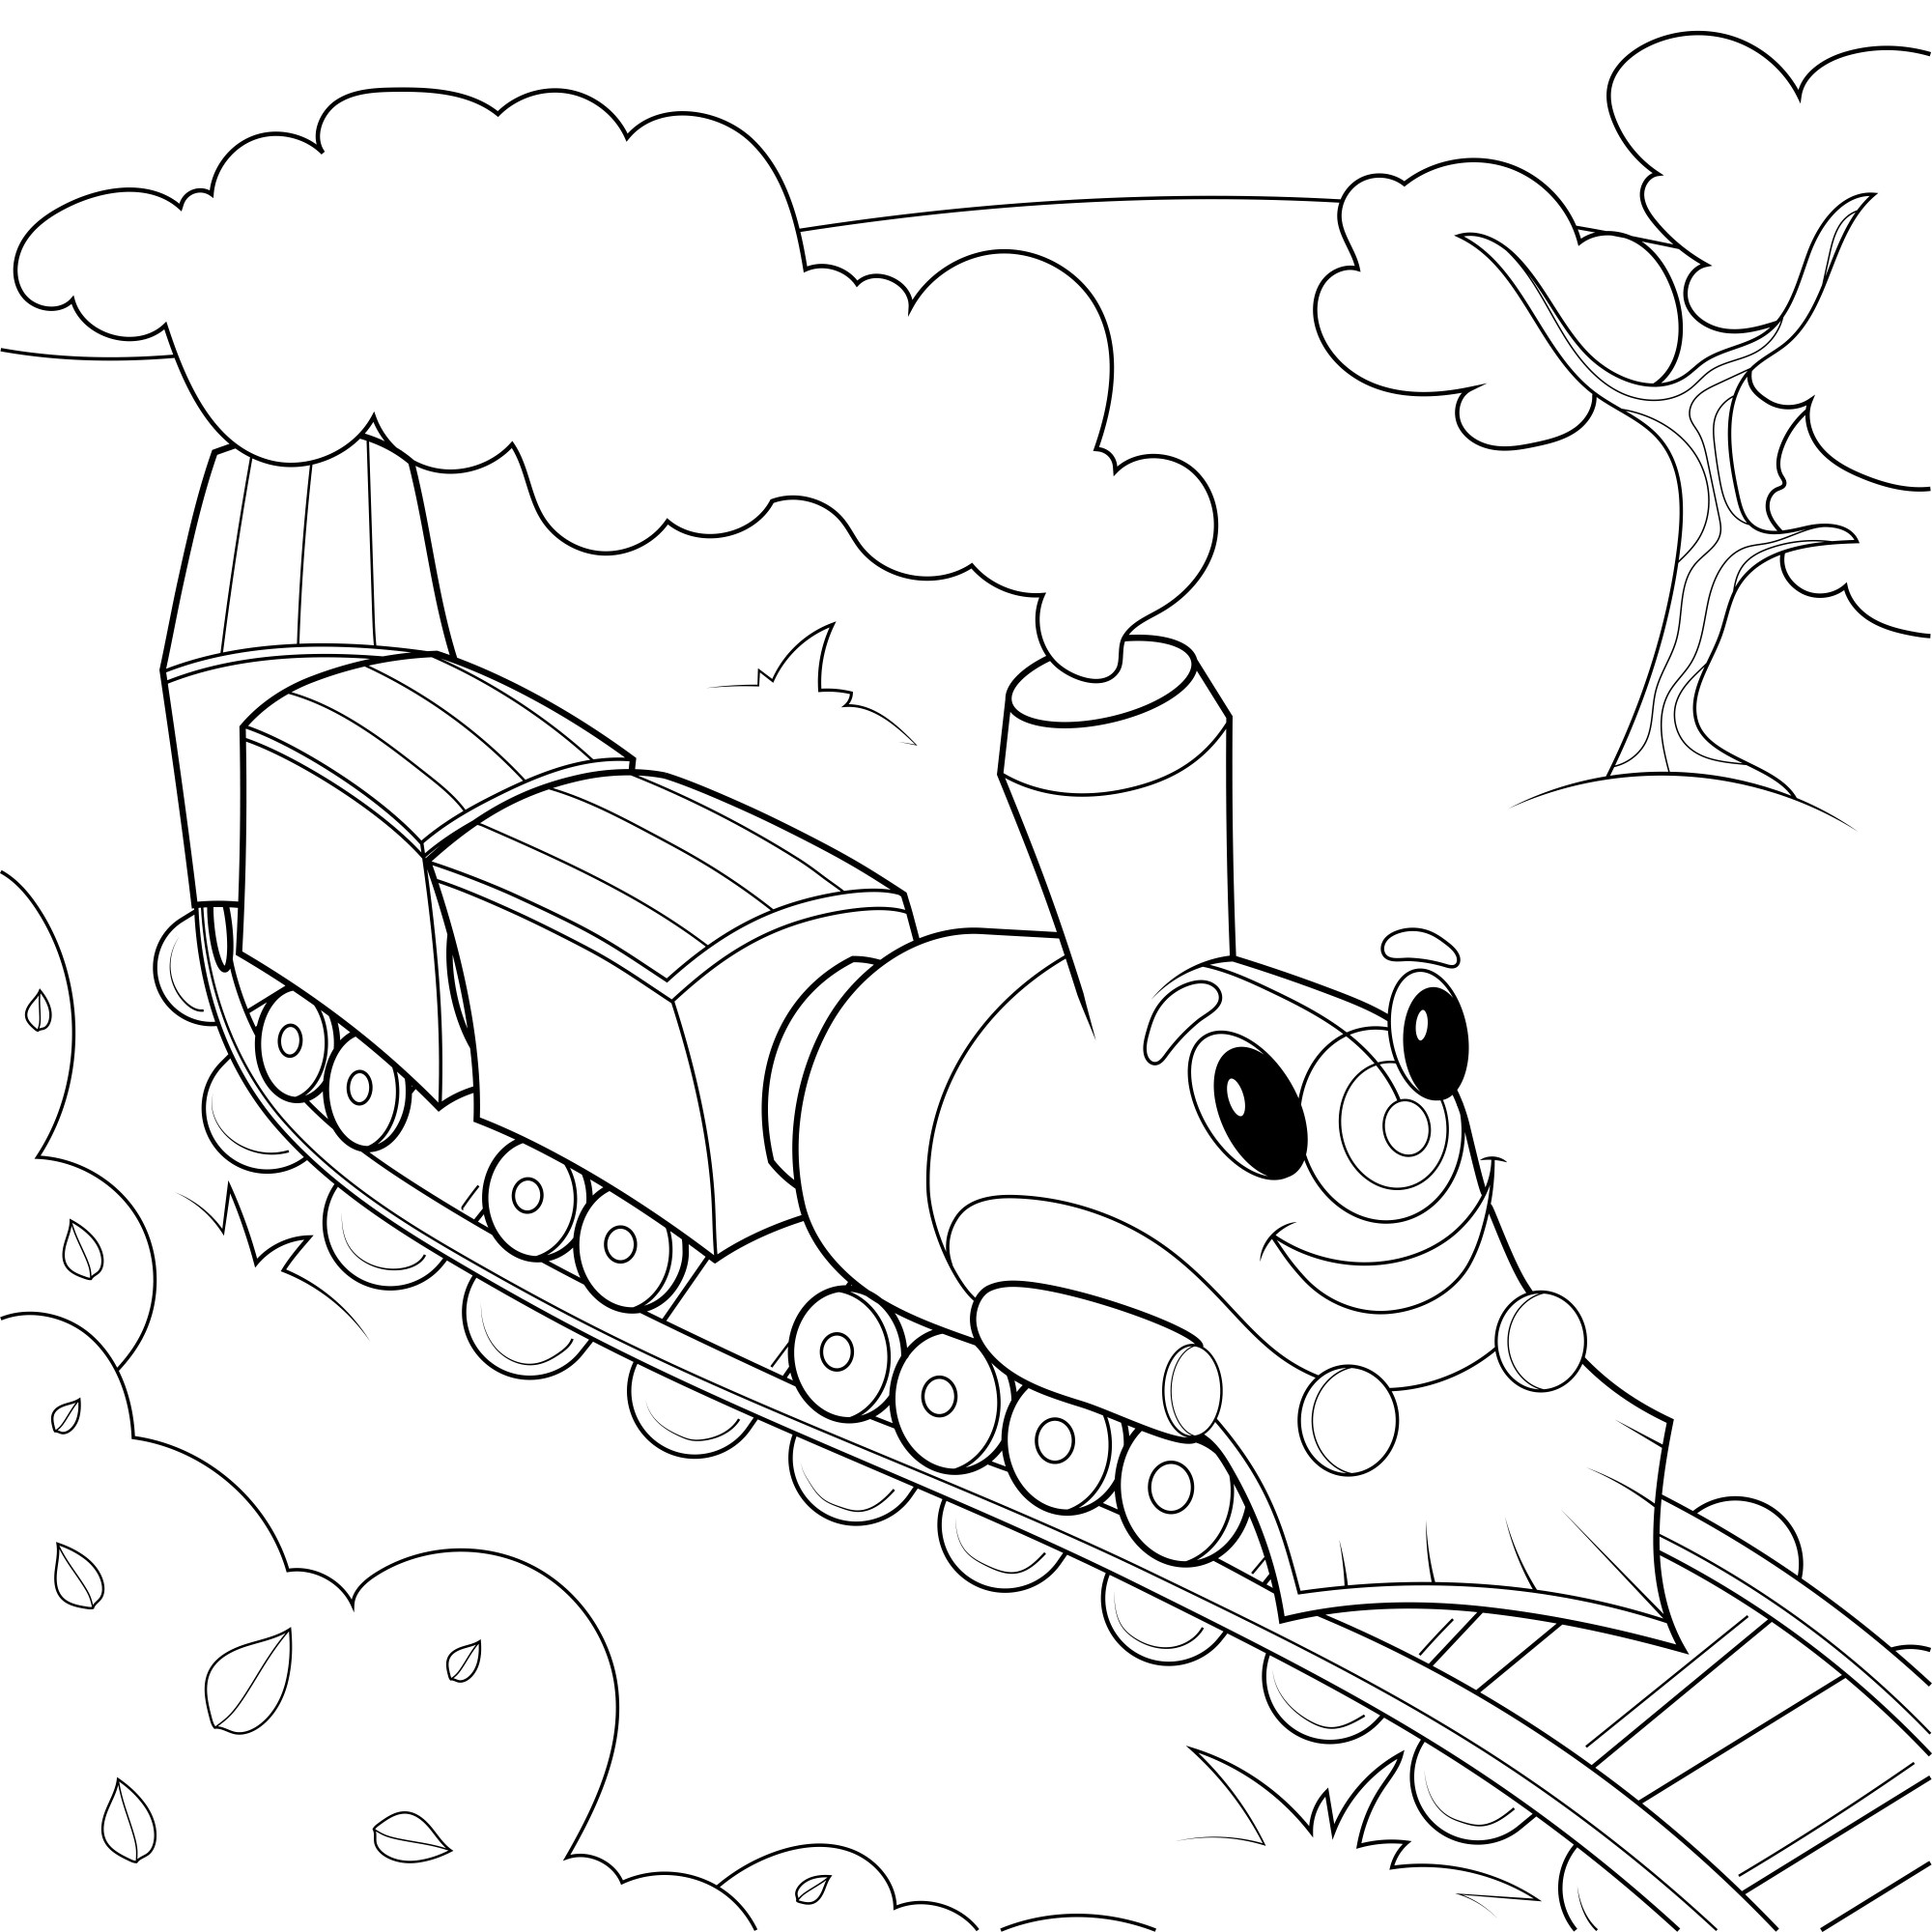 Раскраска для детей: детский поезд паровозик с глазами мчится по железной дороге